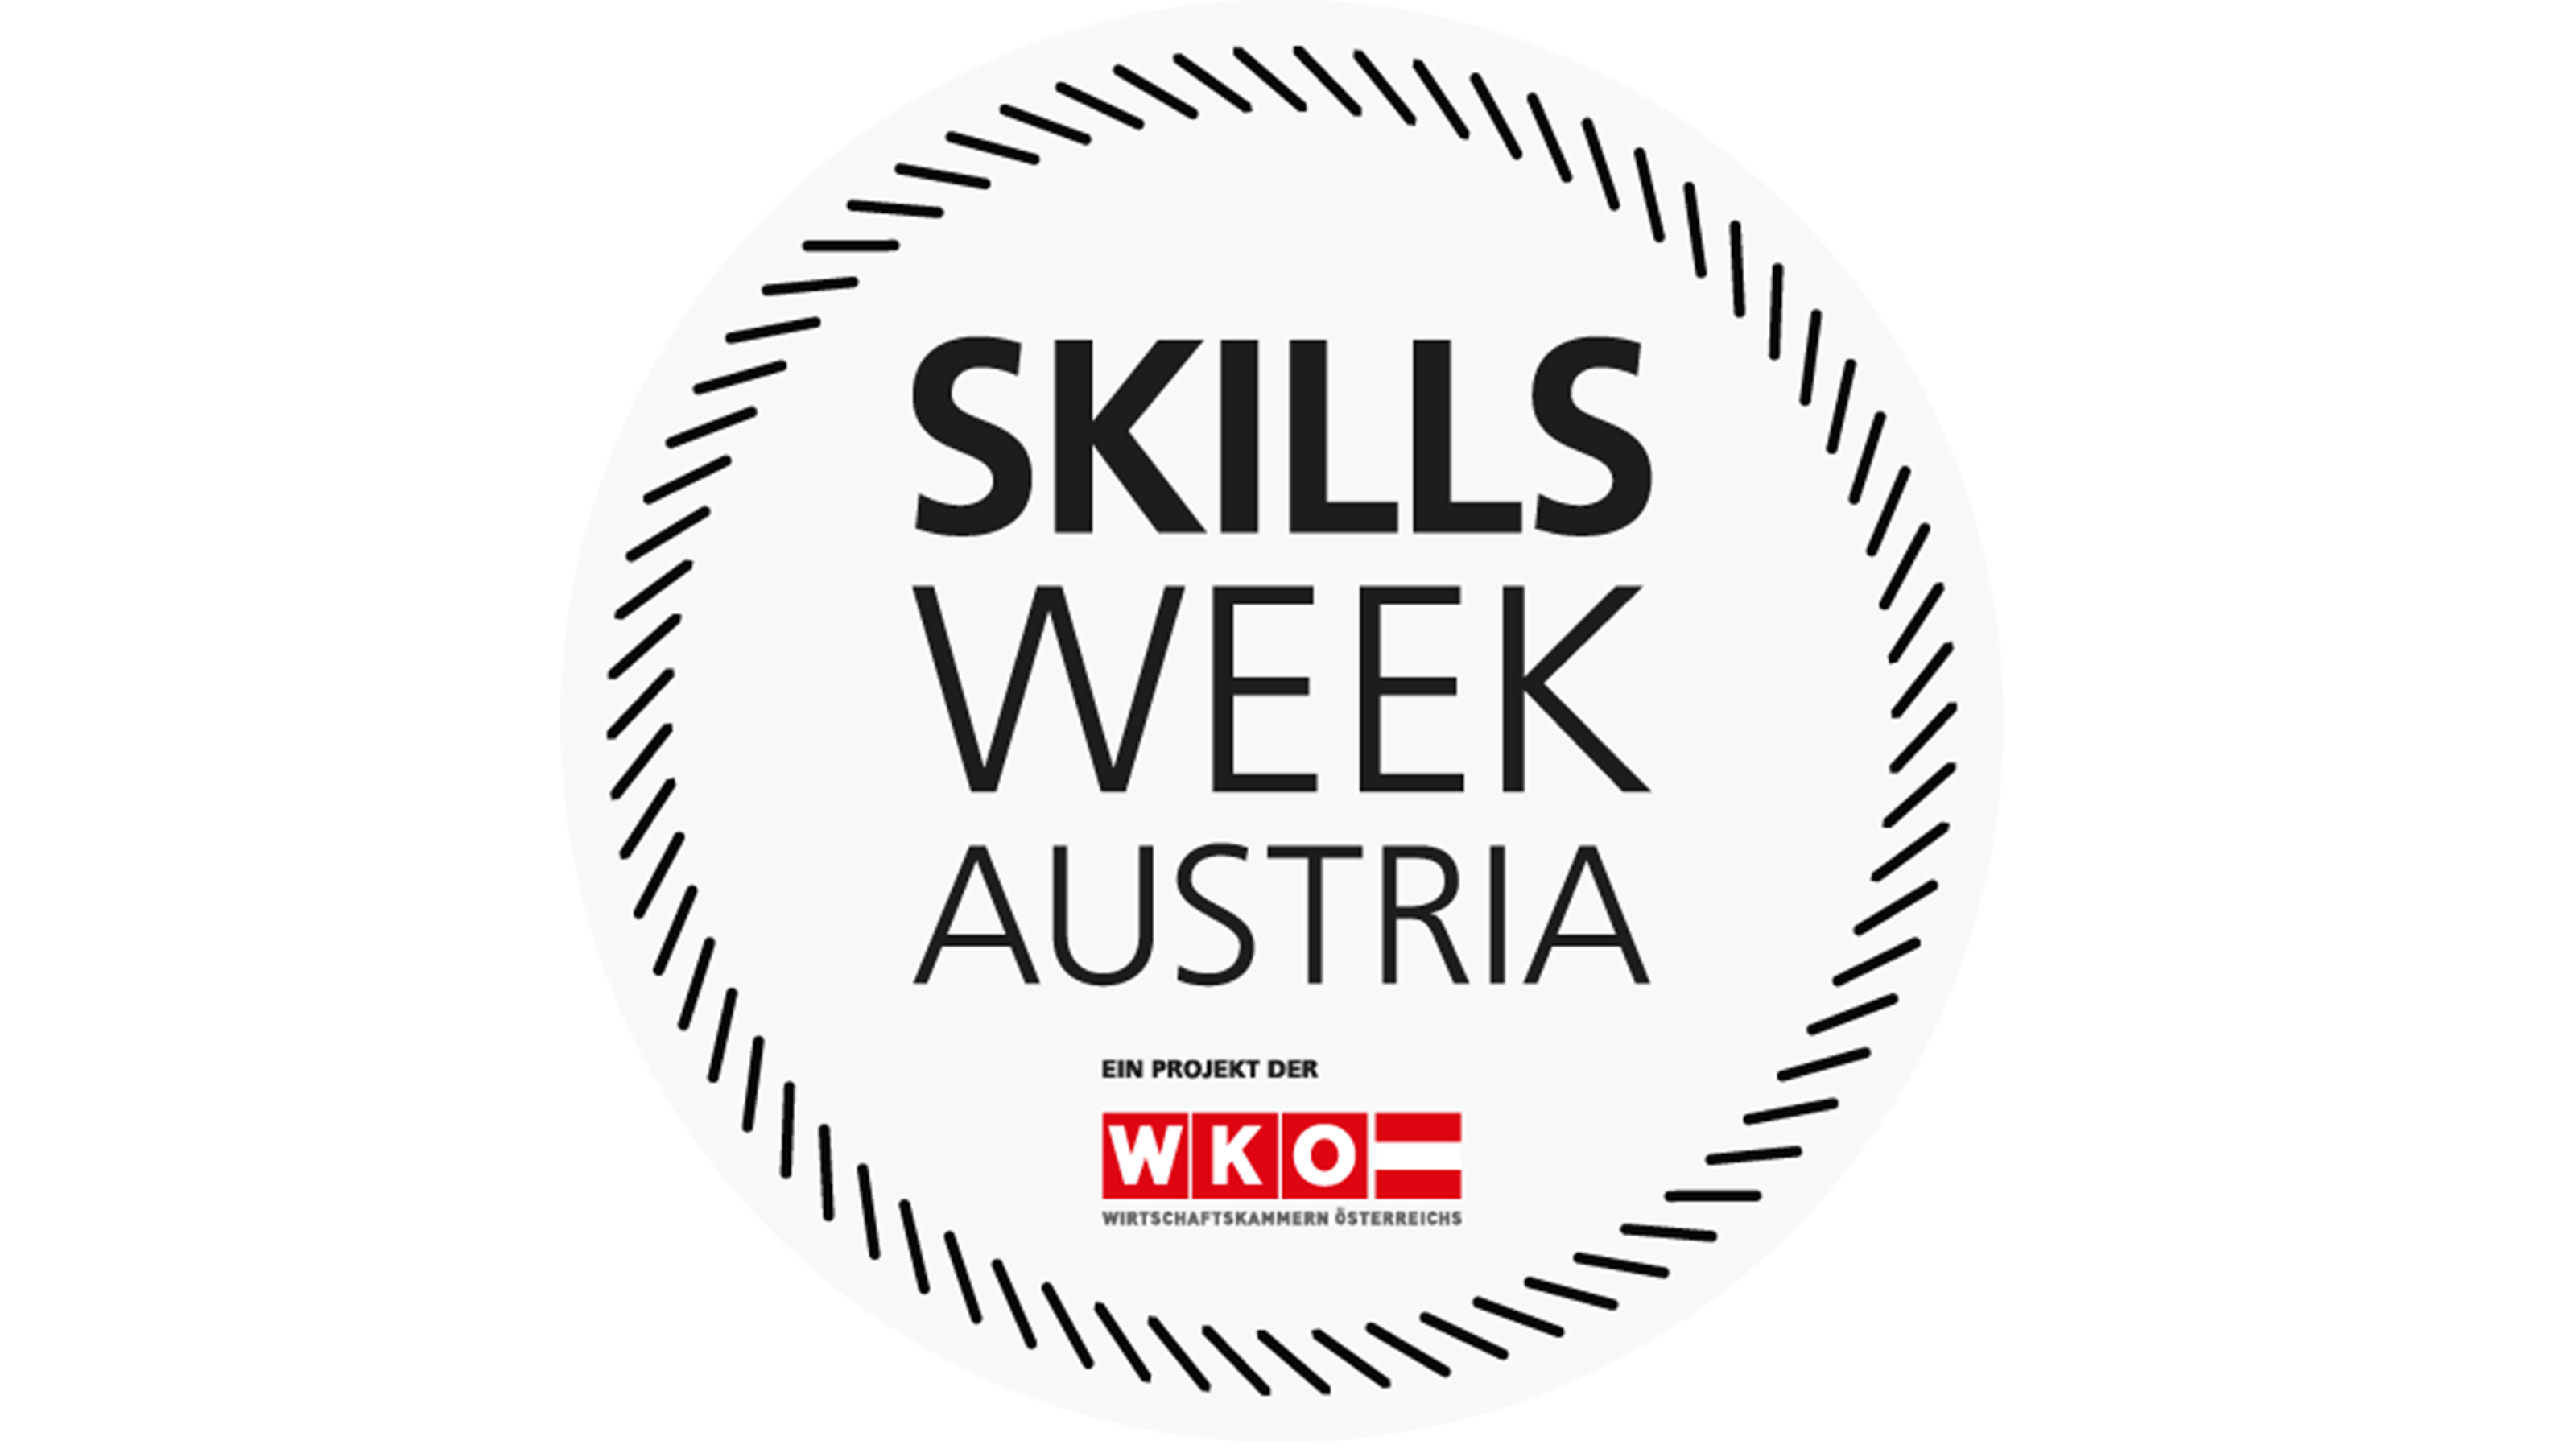 Logo der Skills Week Austria: Schwarzer Schriftzug Skills Week Austria ein Projekt der WKO Wirtschaftskammern Österreichs in Kreis platziert, dessen Linien aus kurzen Strichen bestehen